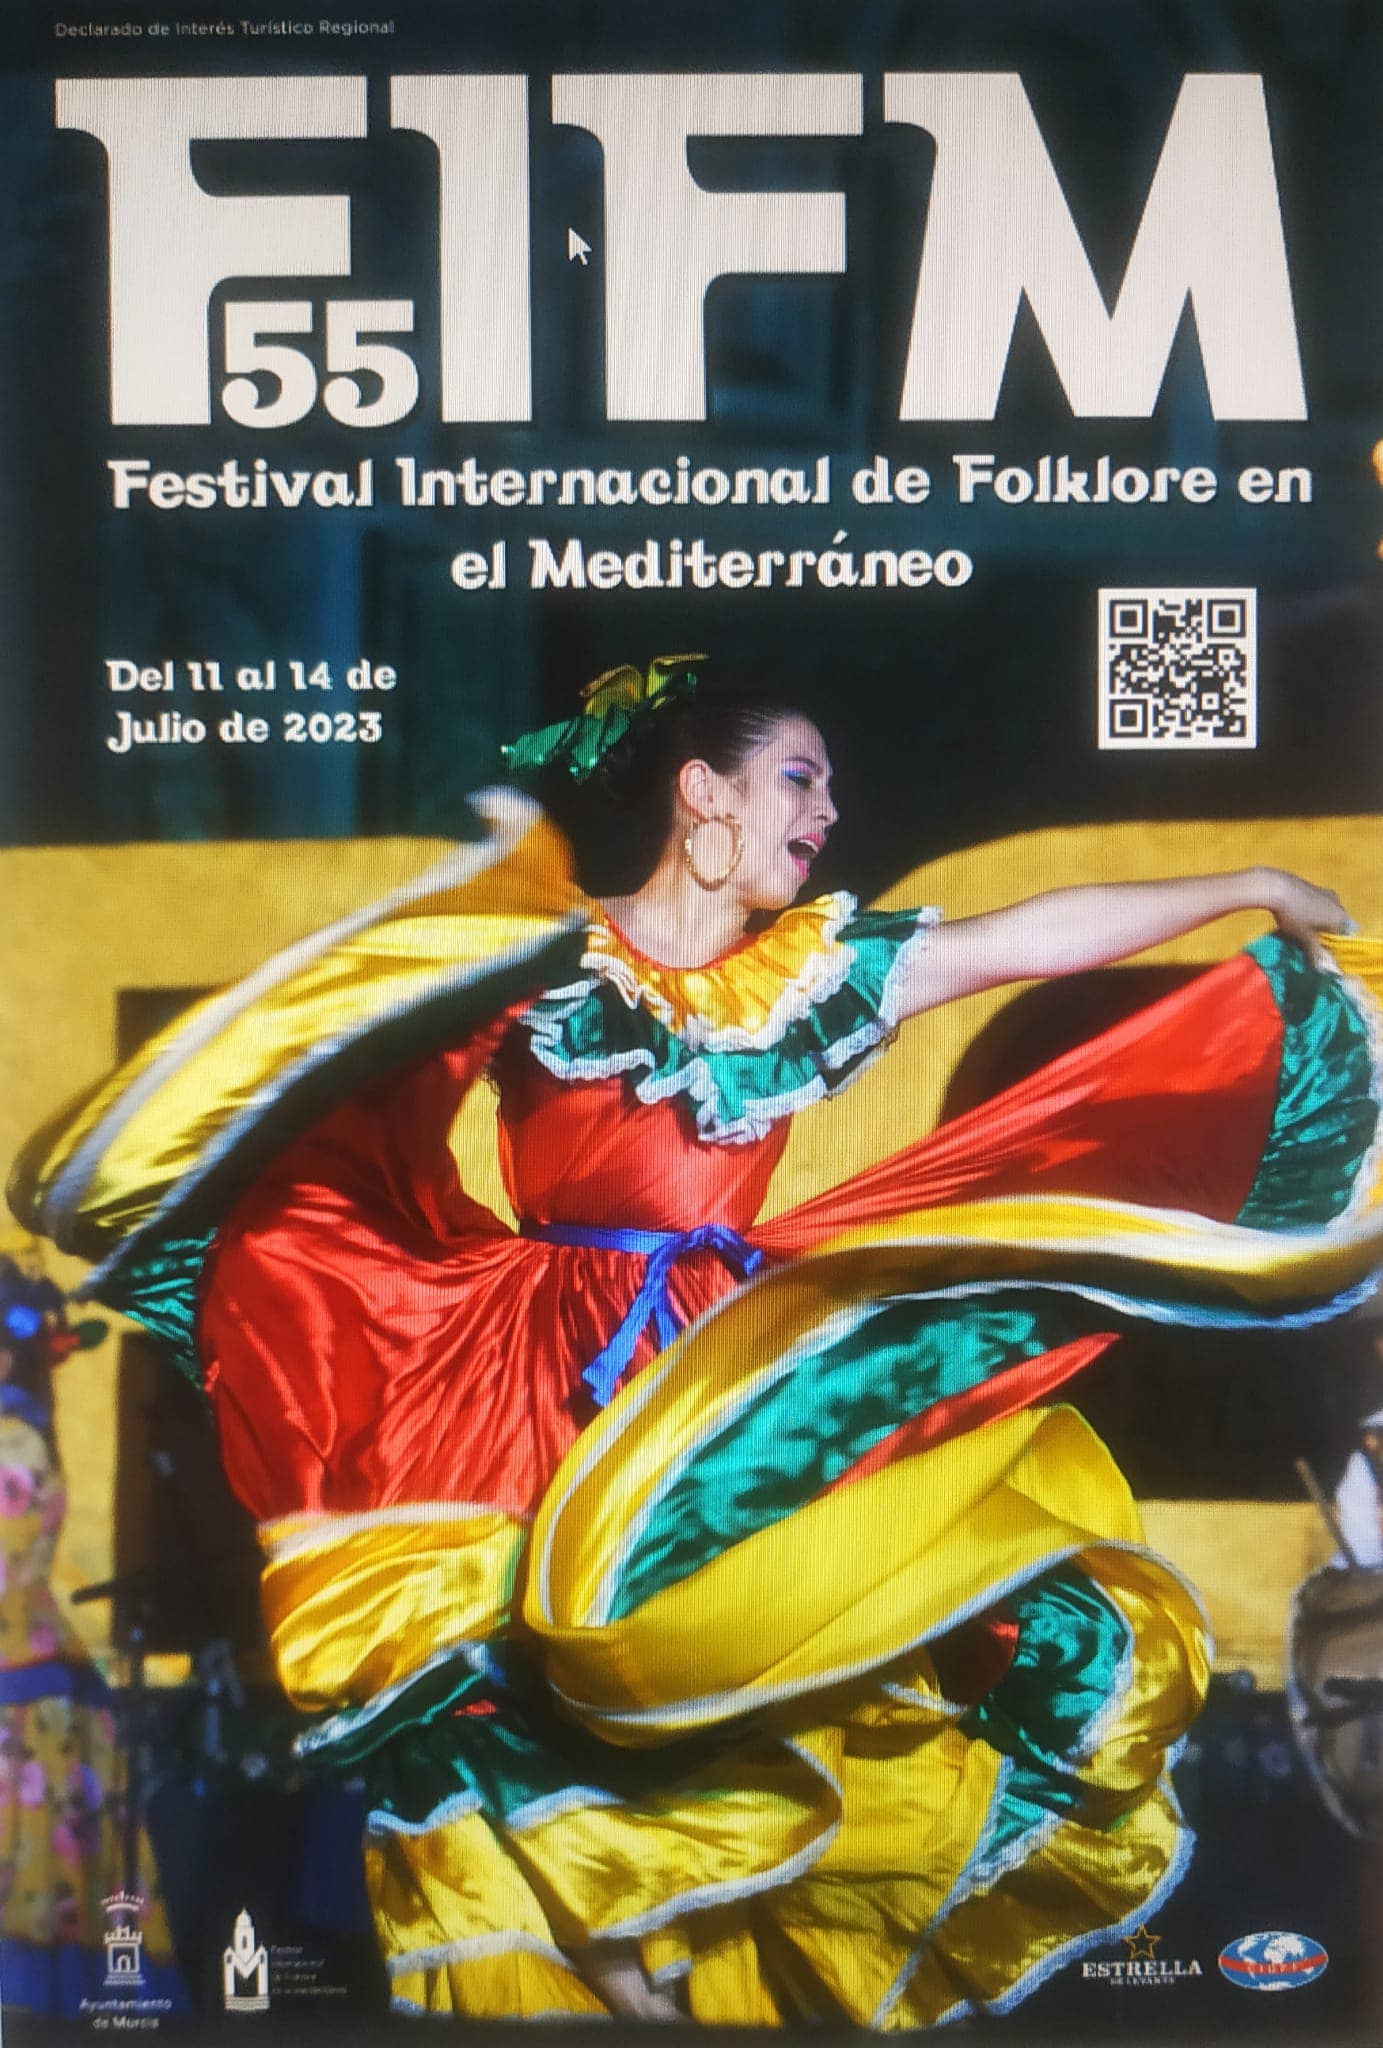 Festival Internacional de Folklore en el Mediterraneo